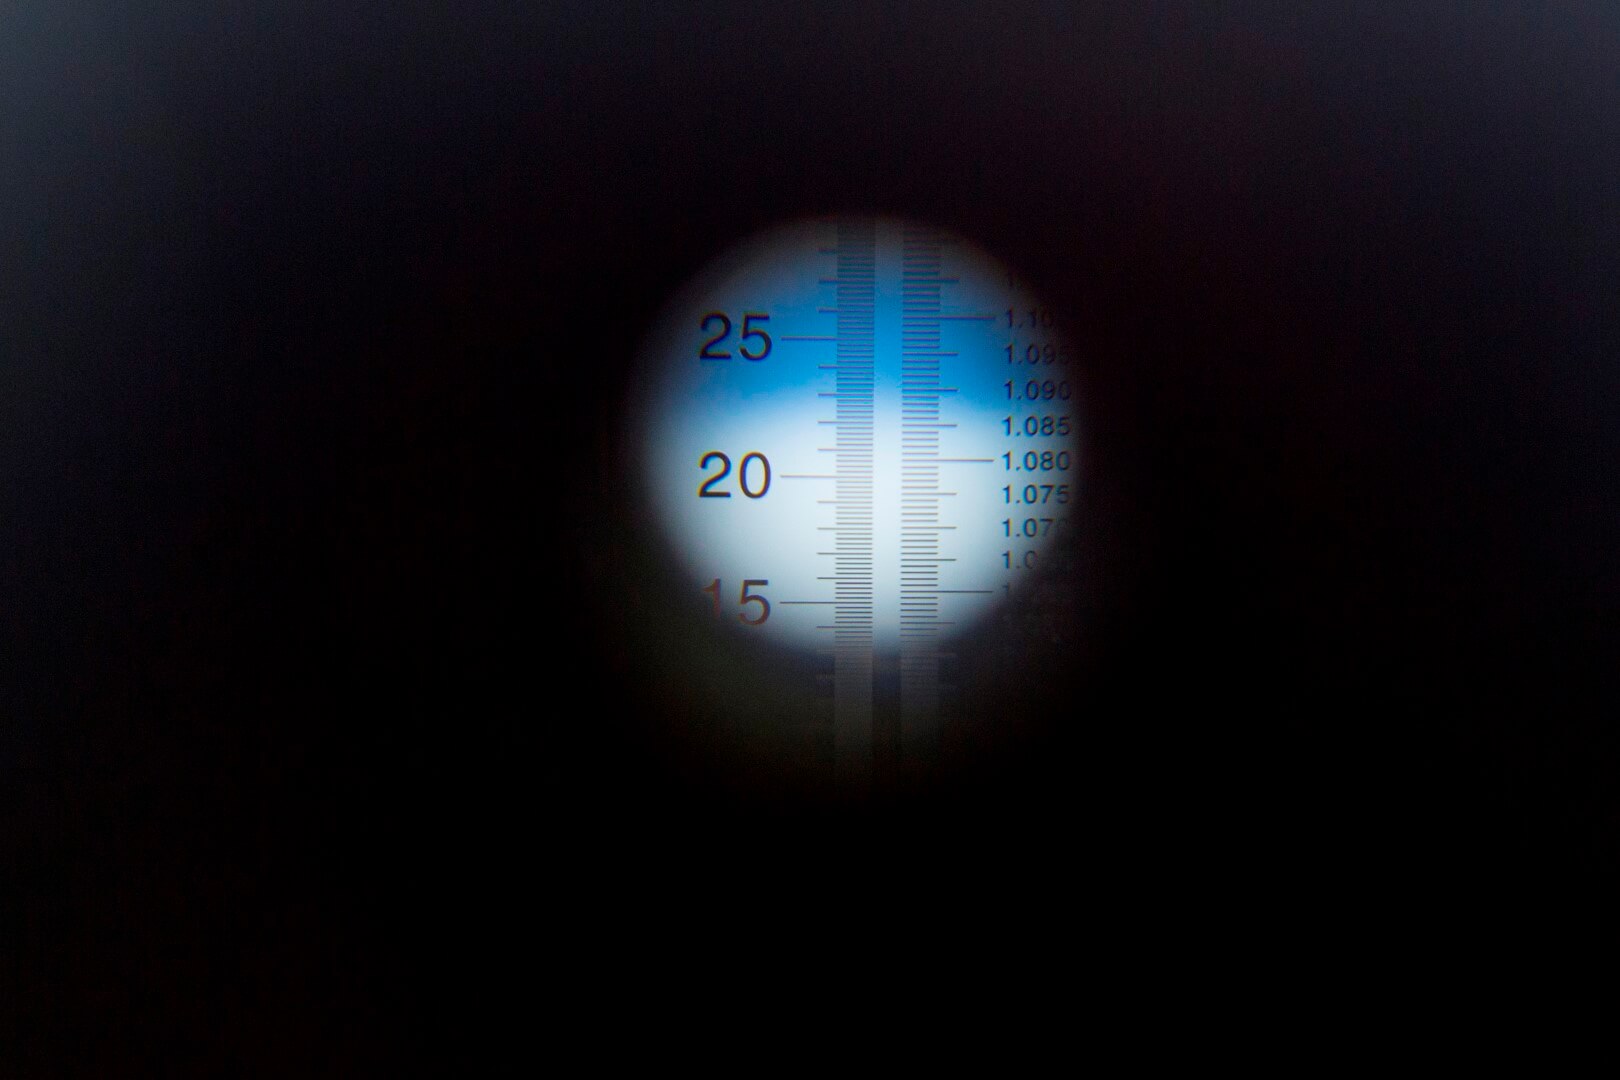 Door tegen daglicht in te kijken laat de refractometer een waarde zien. In dit geval zit het blauwe balkje rond de 25. Dat wil zeggen dat de biestkwaliteit prima is. 